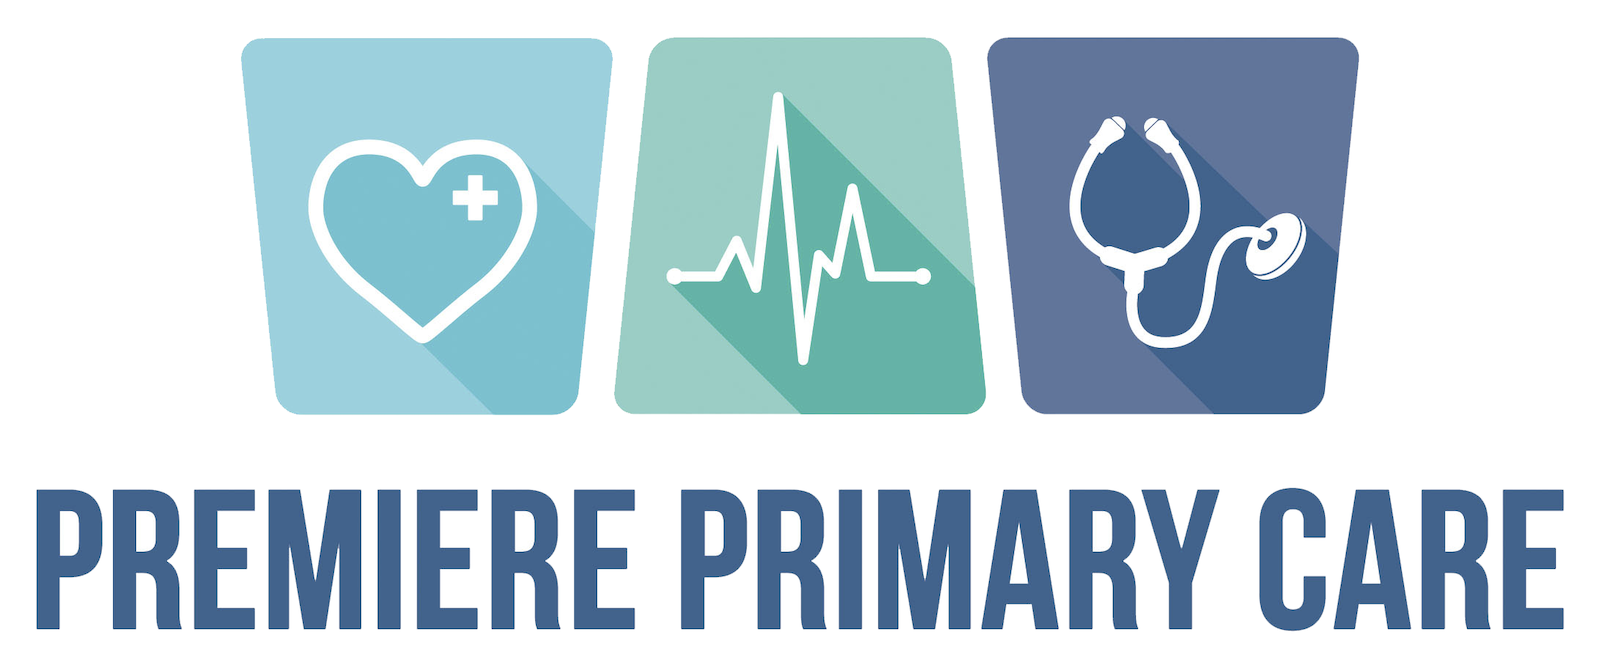 Premiere Primary Care Logo